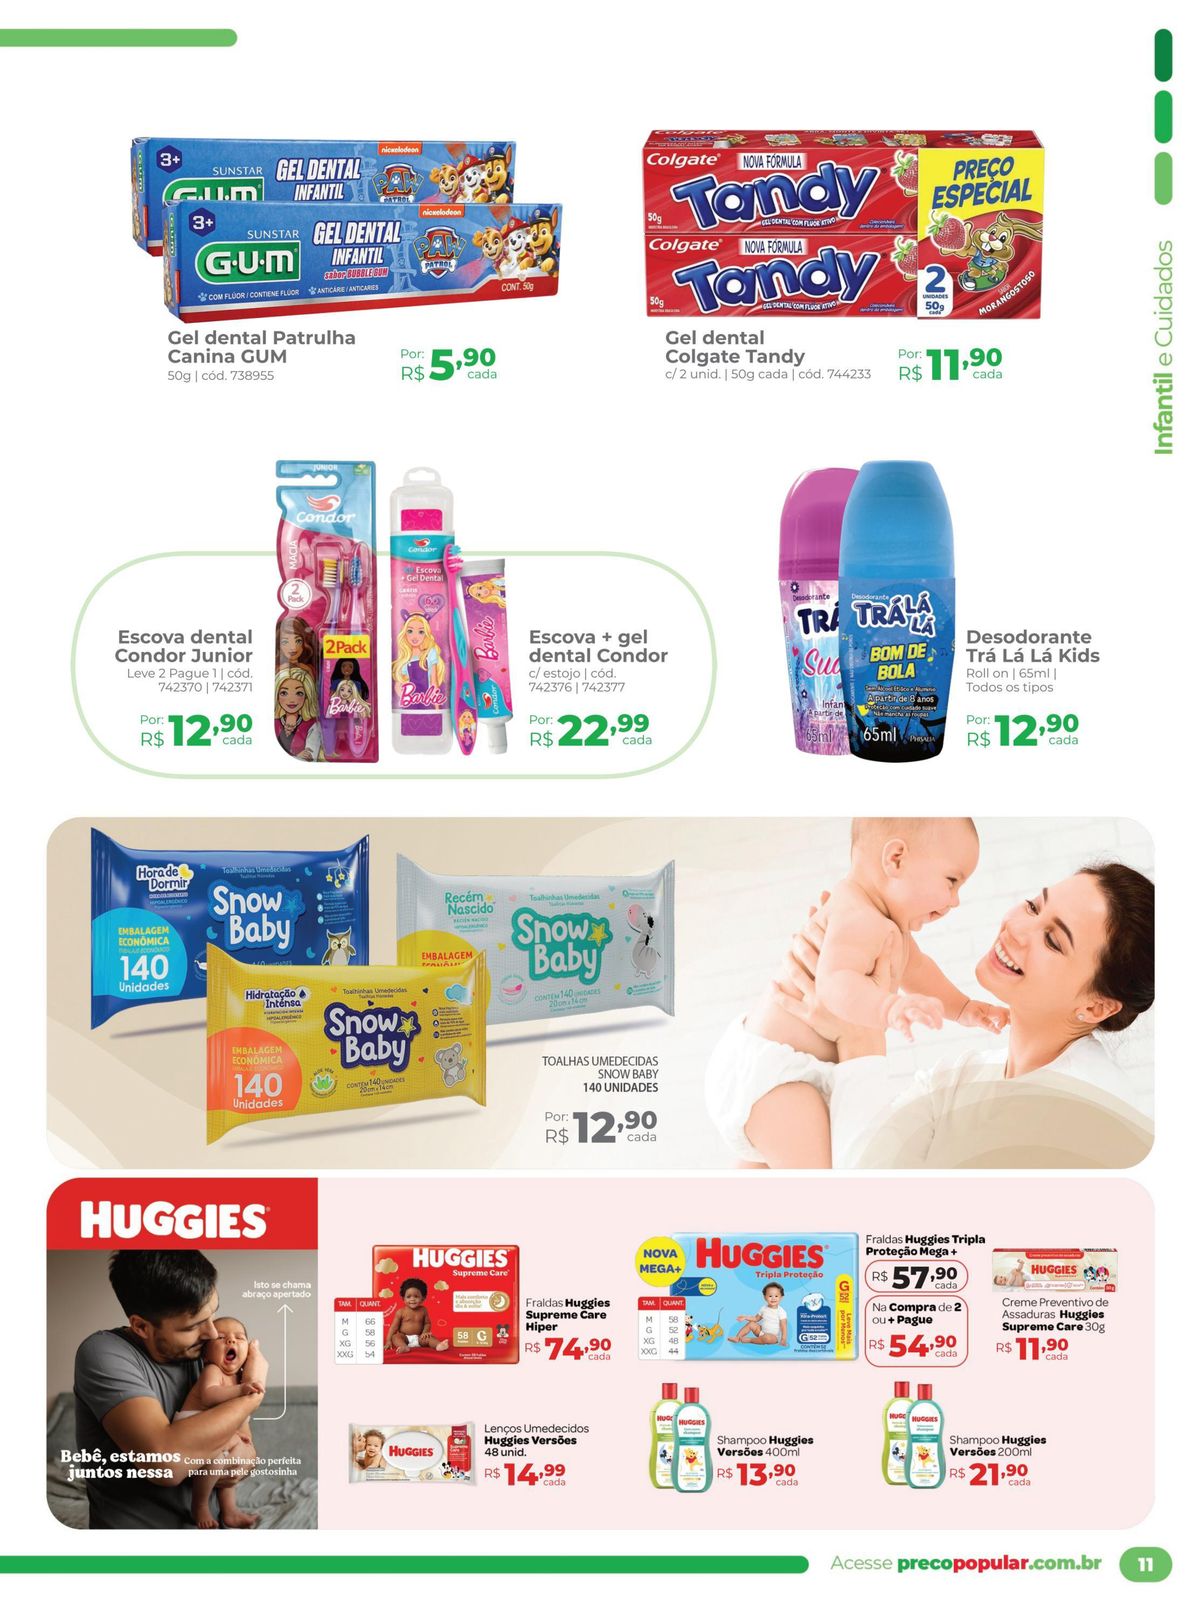 Ofertas em produtos de higiene infantil e cuidados para bebês